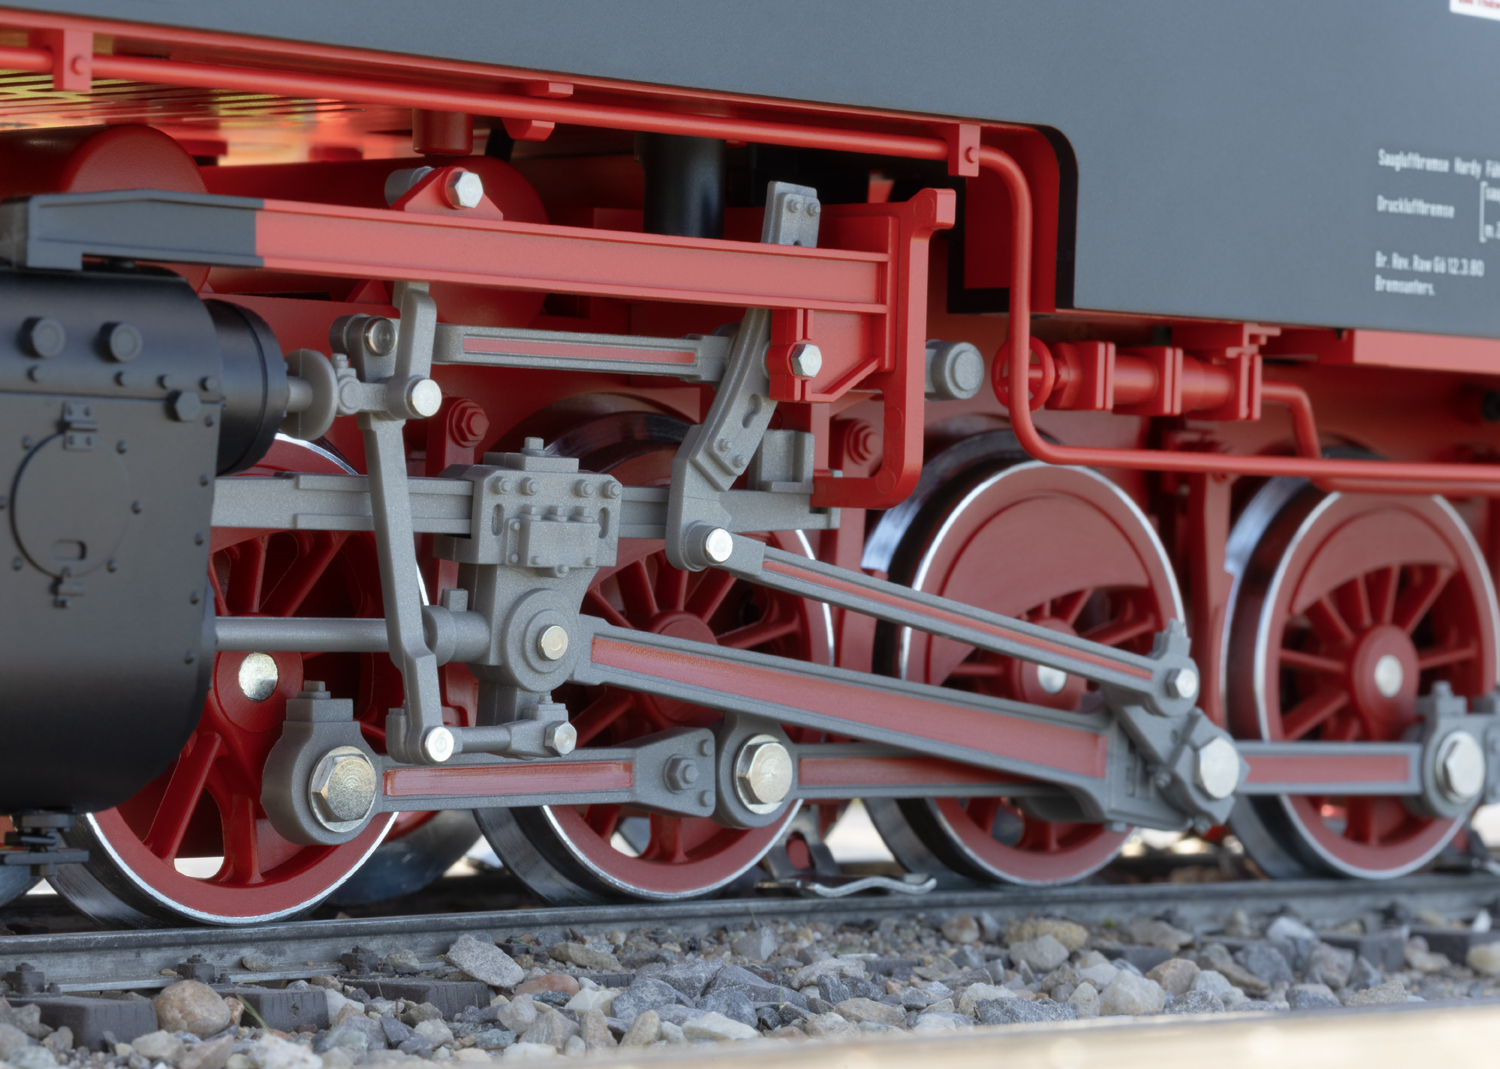 Dampflok BR 99.0244 Öl Dampflokomotive Baureihe 99.23-24, Harzlok erstmals als Modell einer mit Ölfeuerung